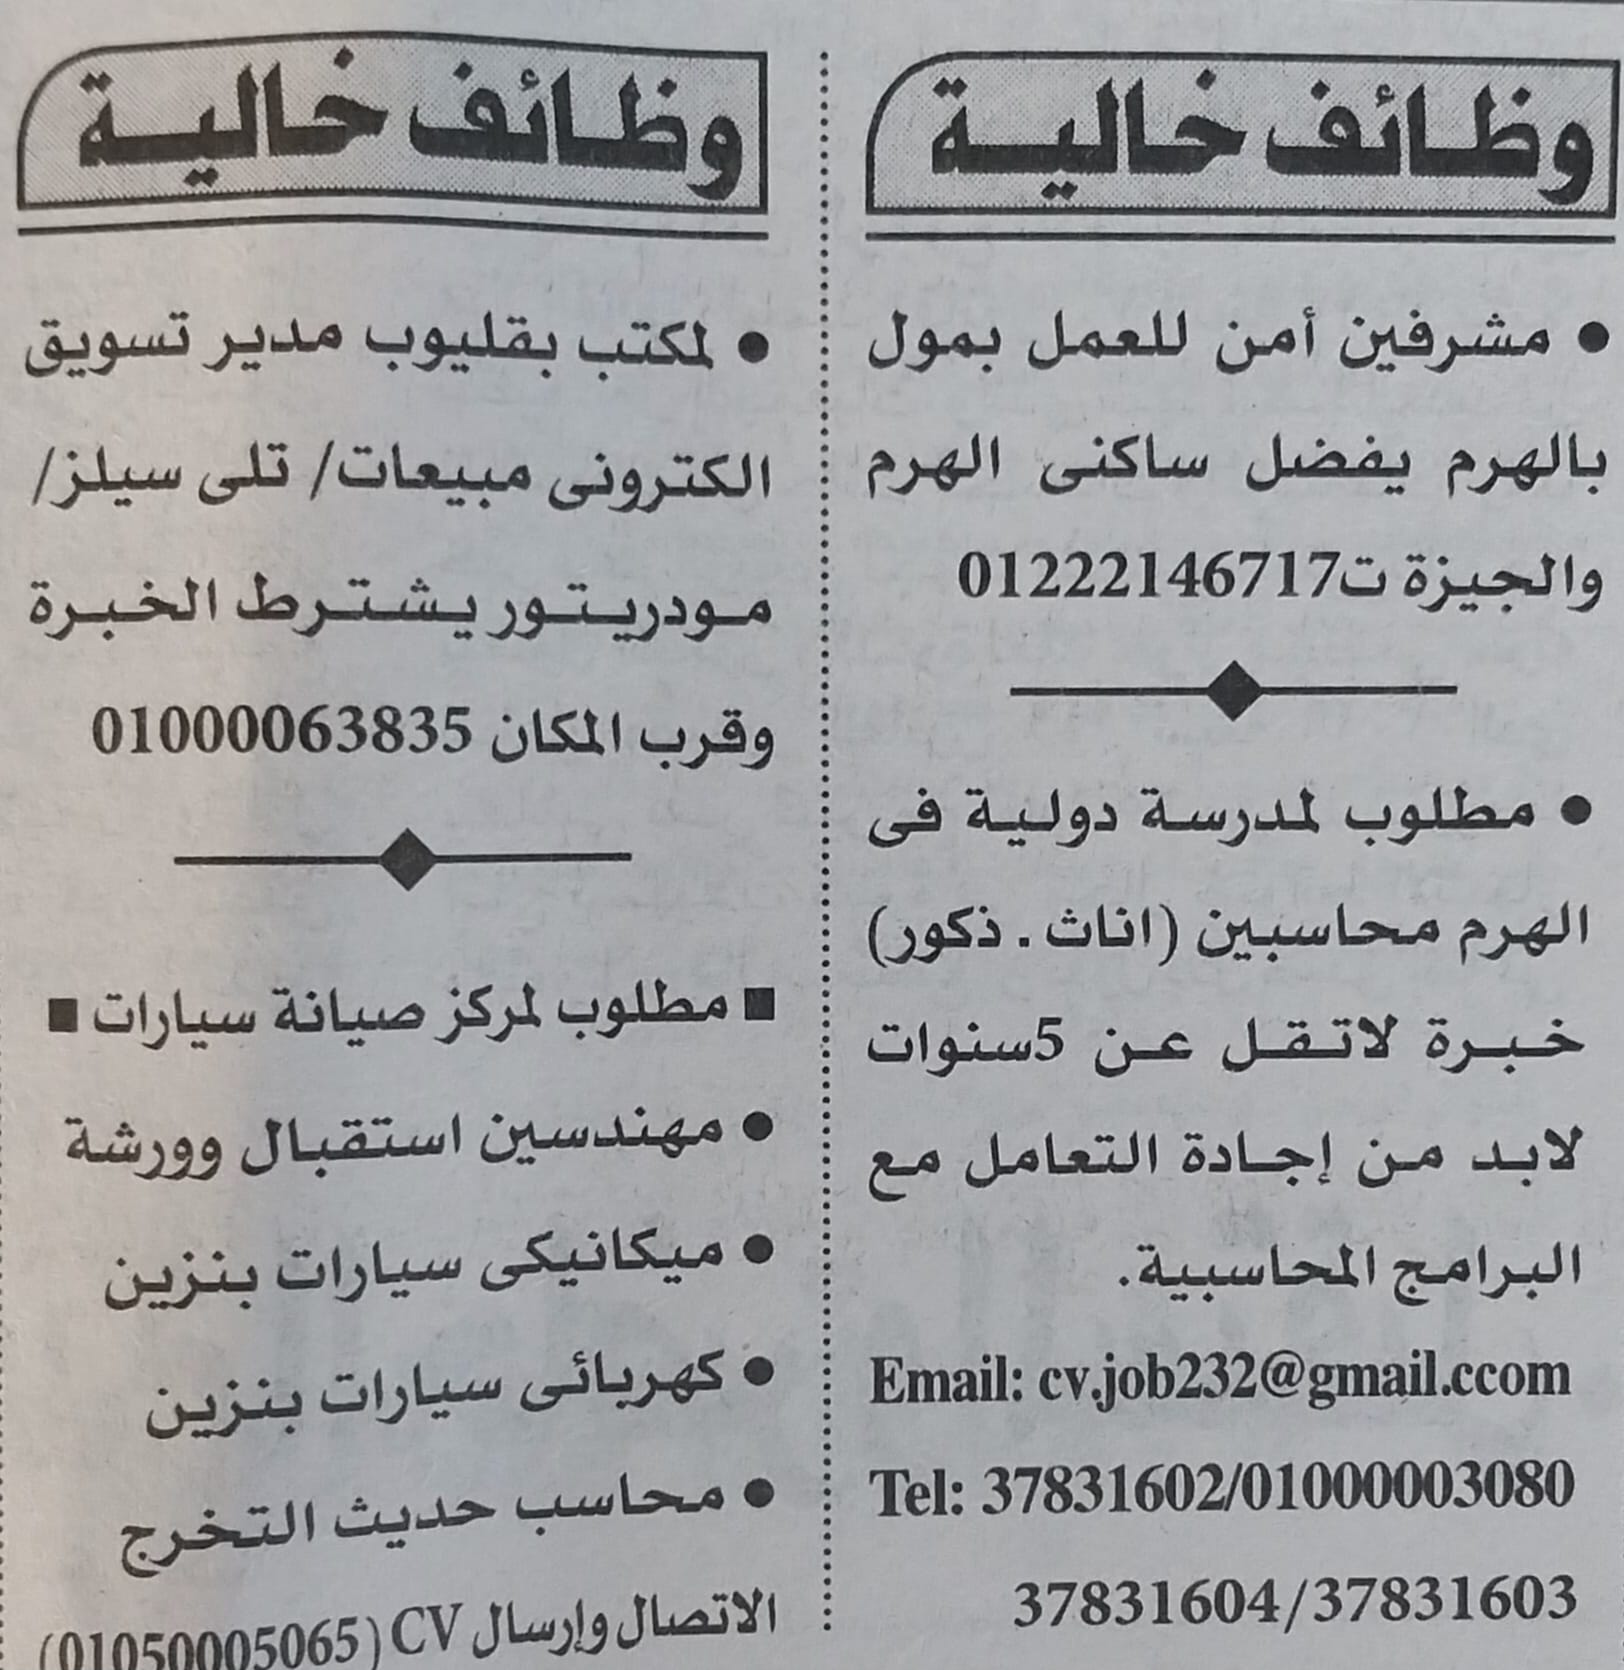 اعلان وظائف جريدة الأهرام للمؤهلات العليا والدبلومات وعمال بتاريخ 19-6-2023